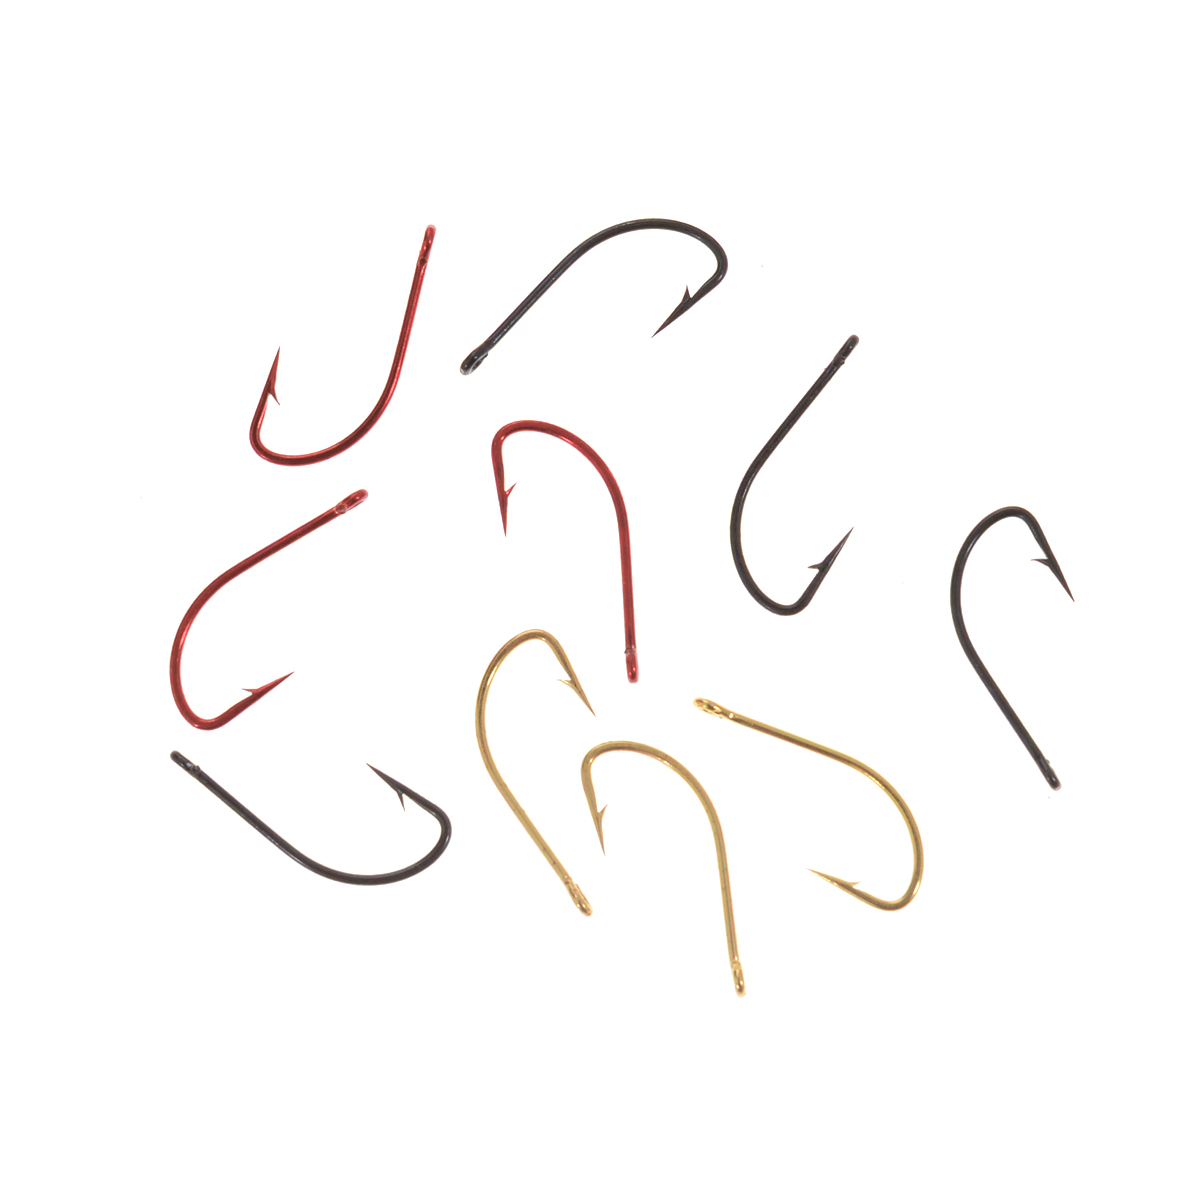 Крючки рыболовные Cobra Mix, цвет: черный, красный, золотой, размер 12, 10 шт